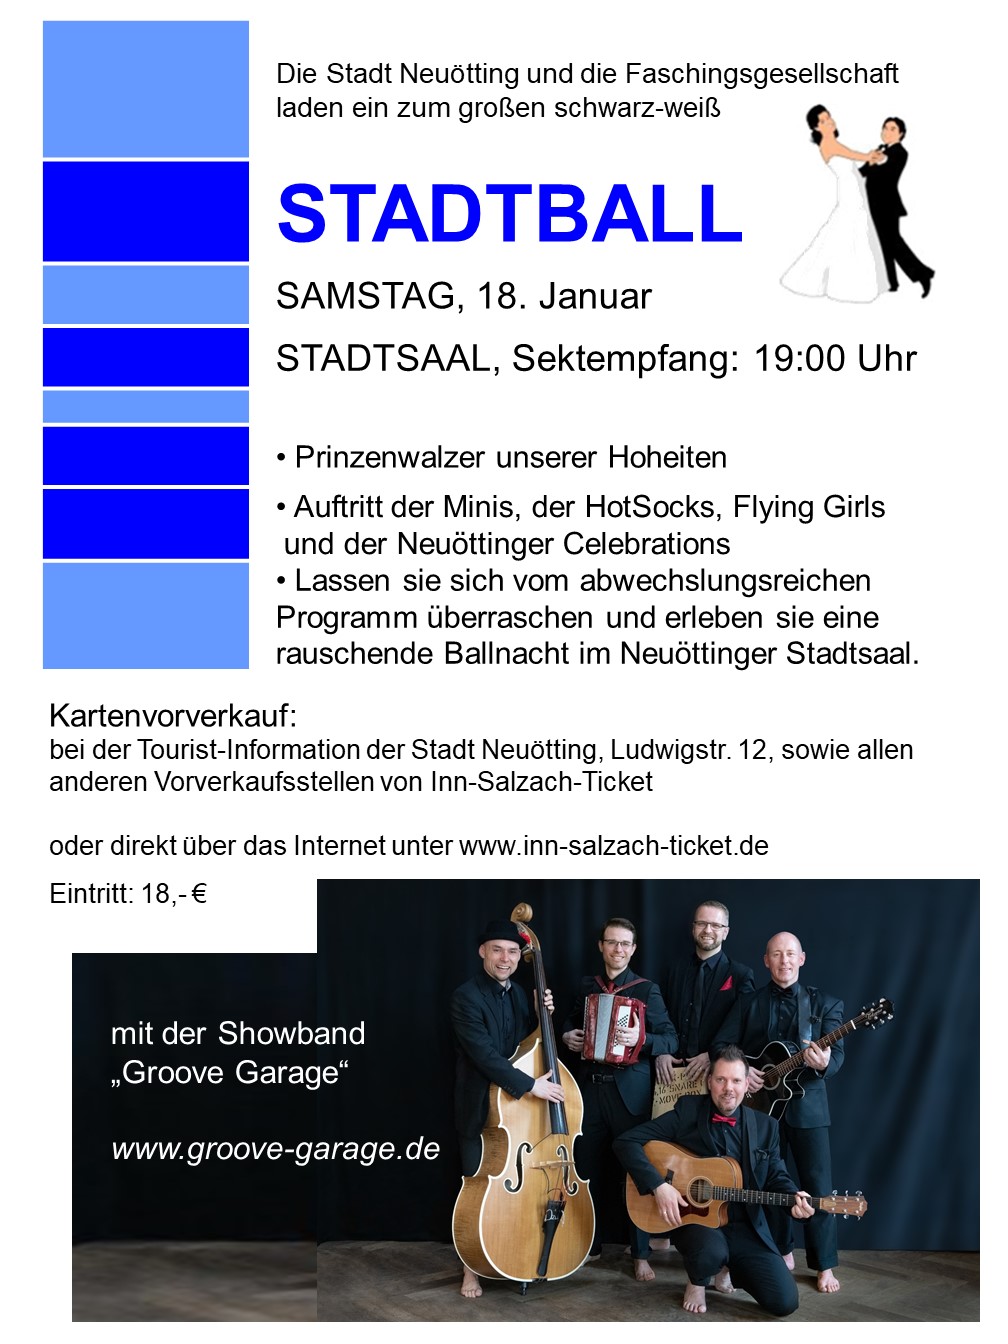 FG Stadtball Plakat 2020